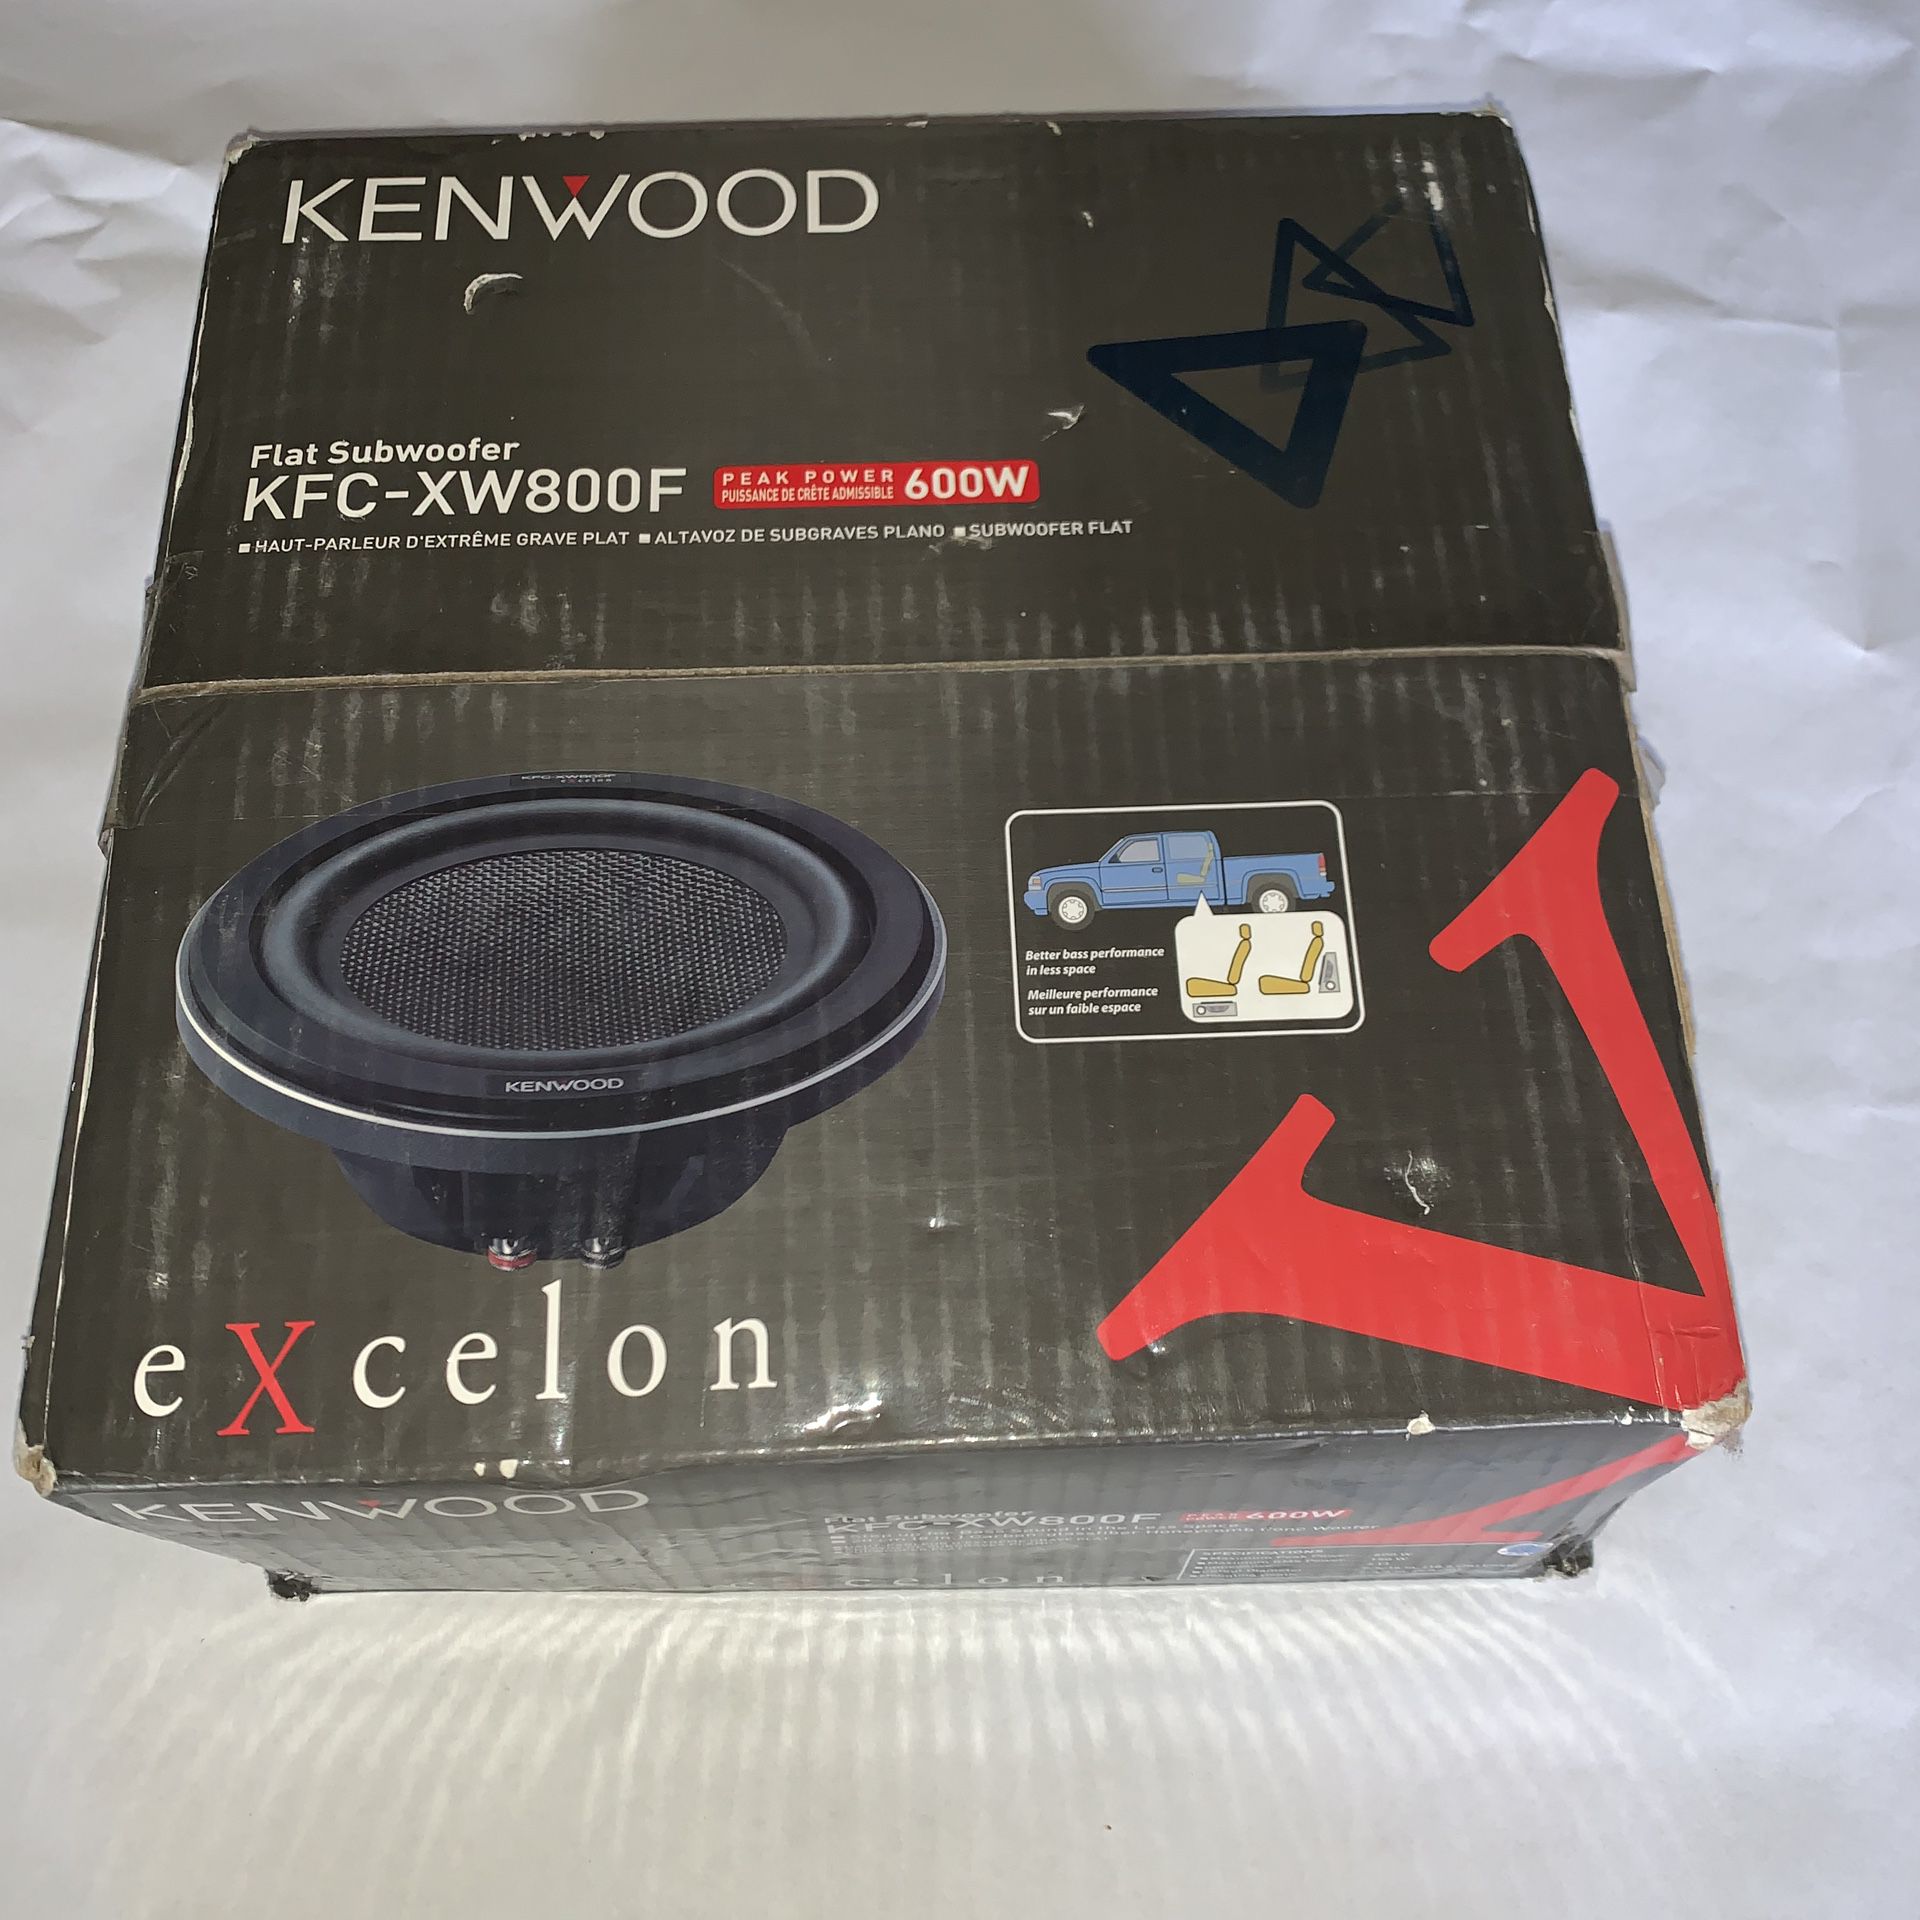 Kenwood KFC-XW800F Flat Subwoofer